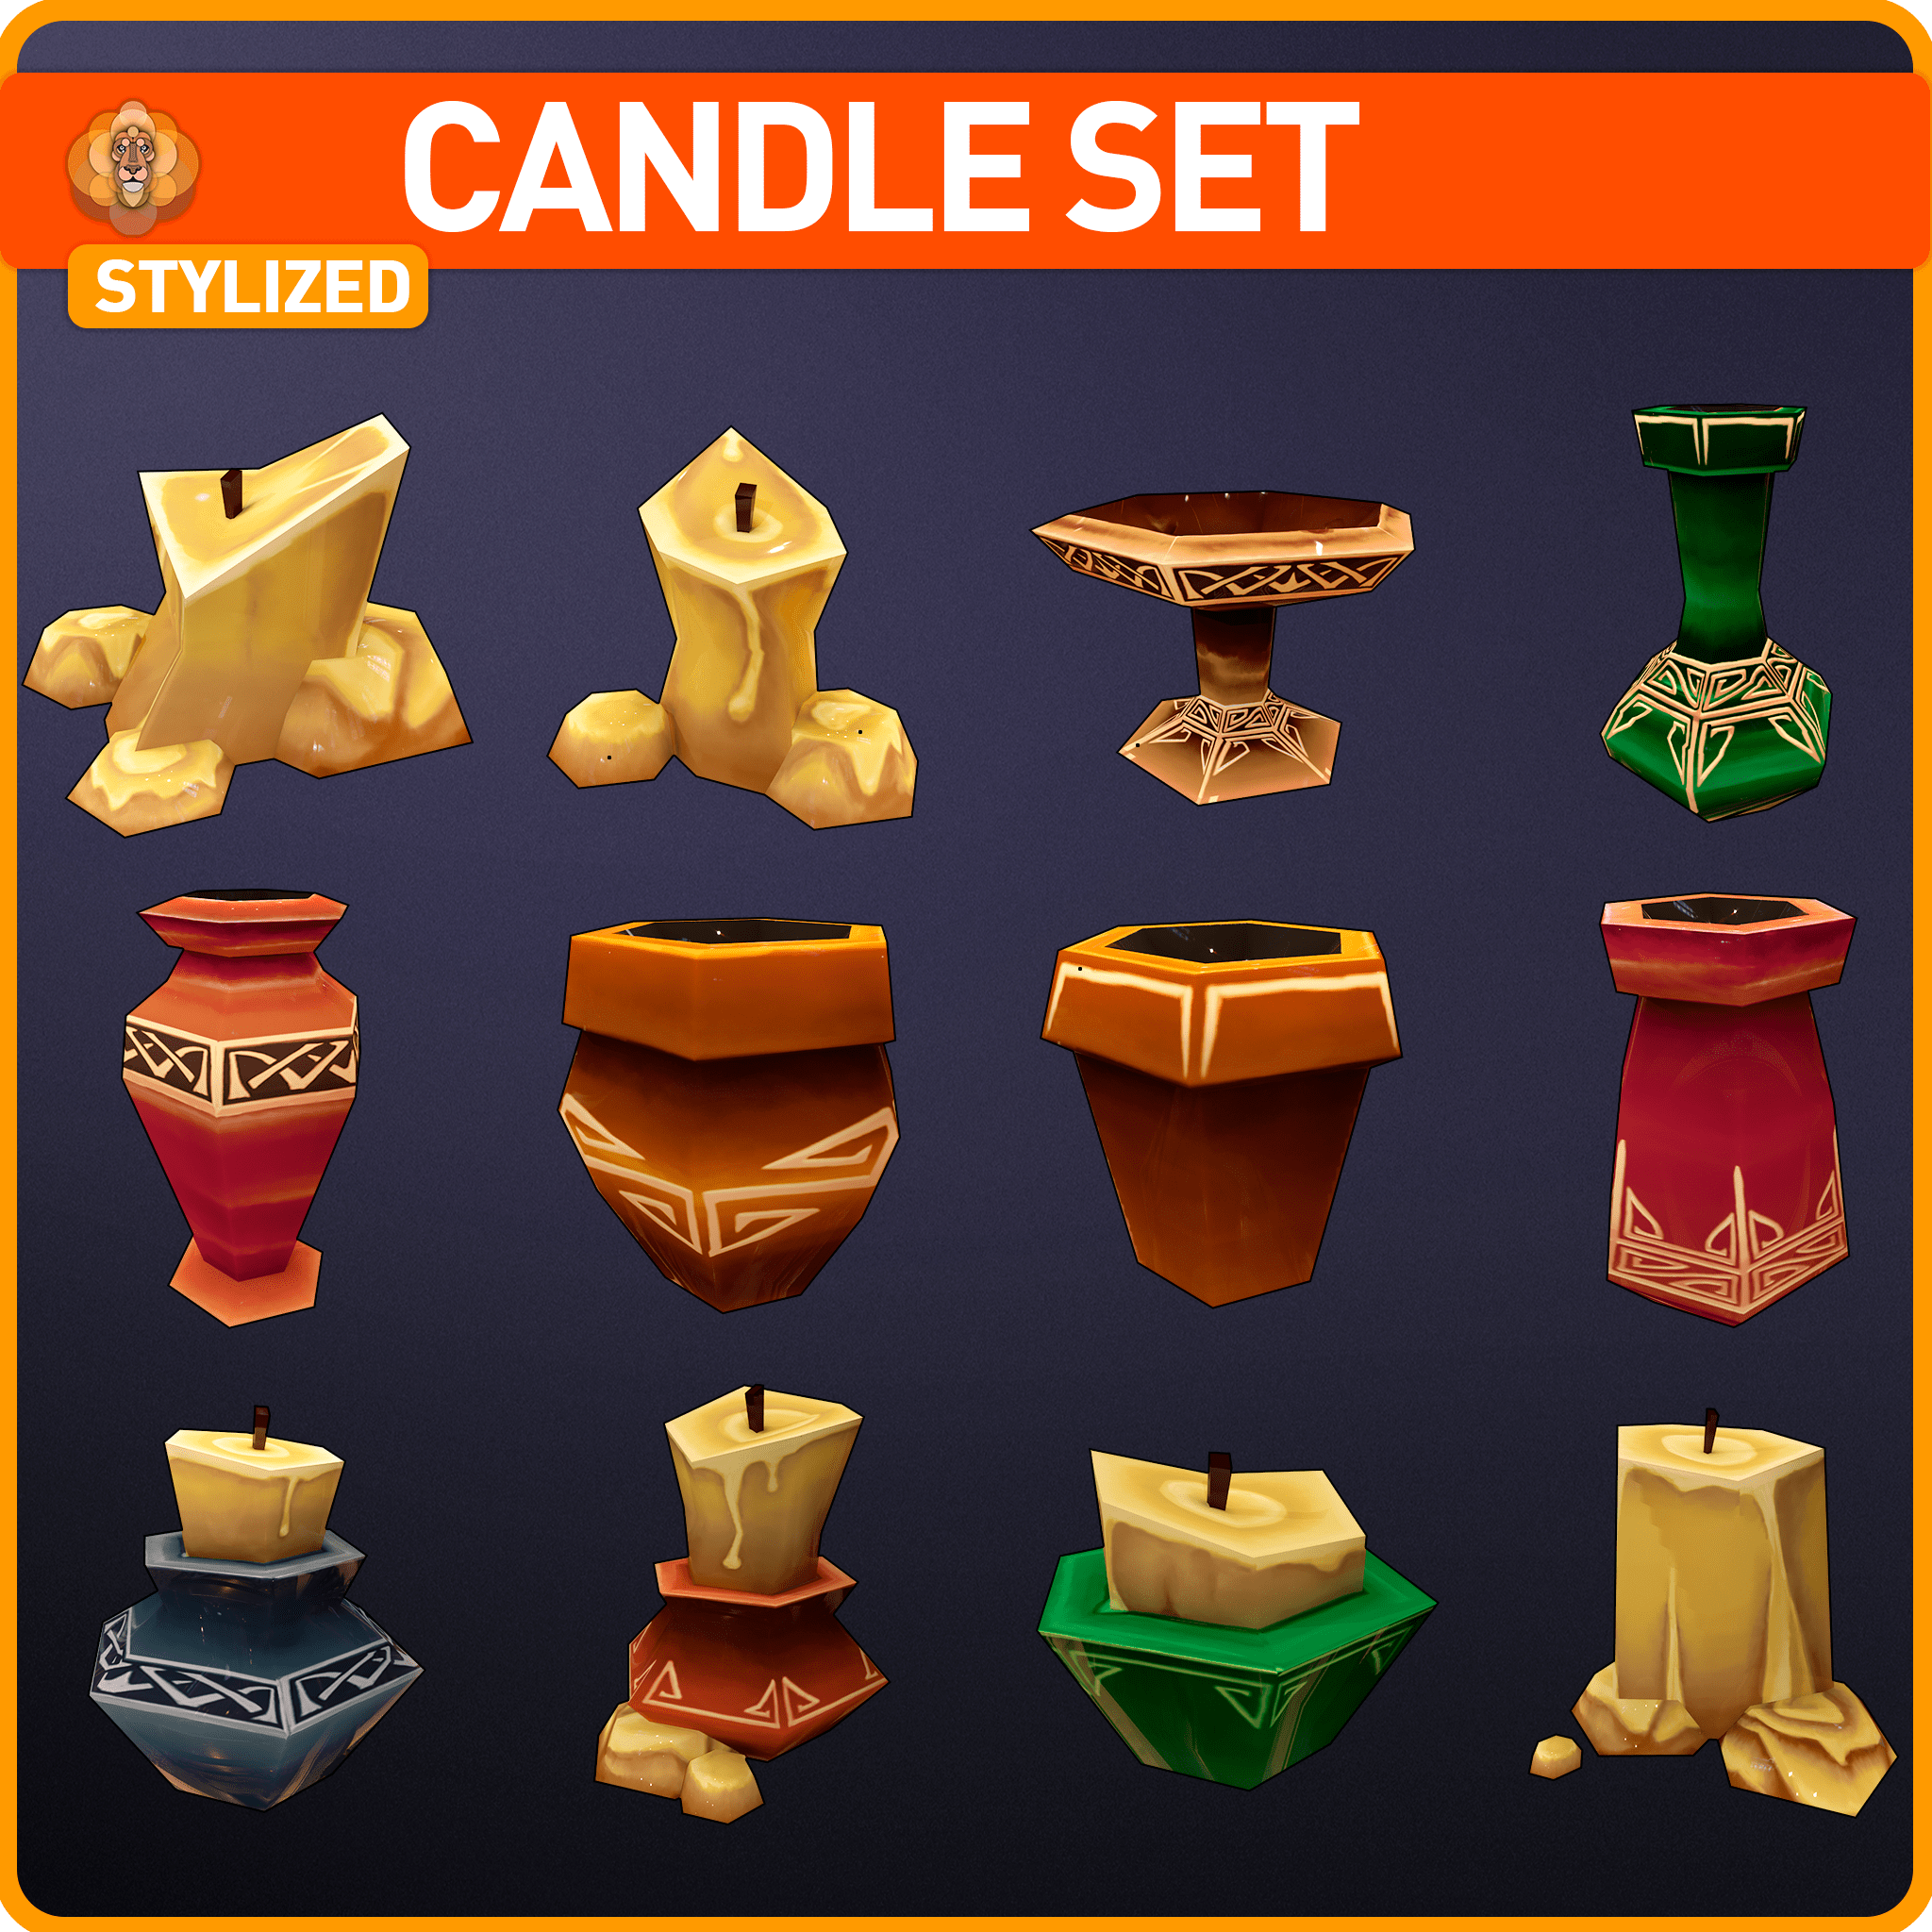 Stylized Candle Set